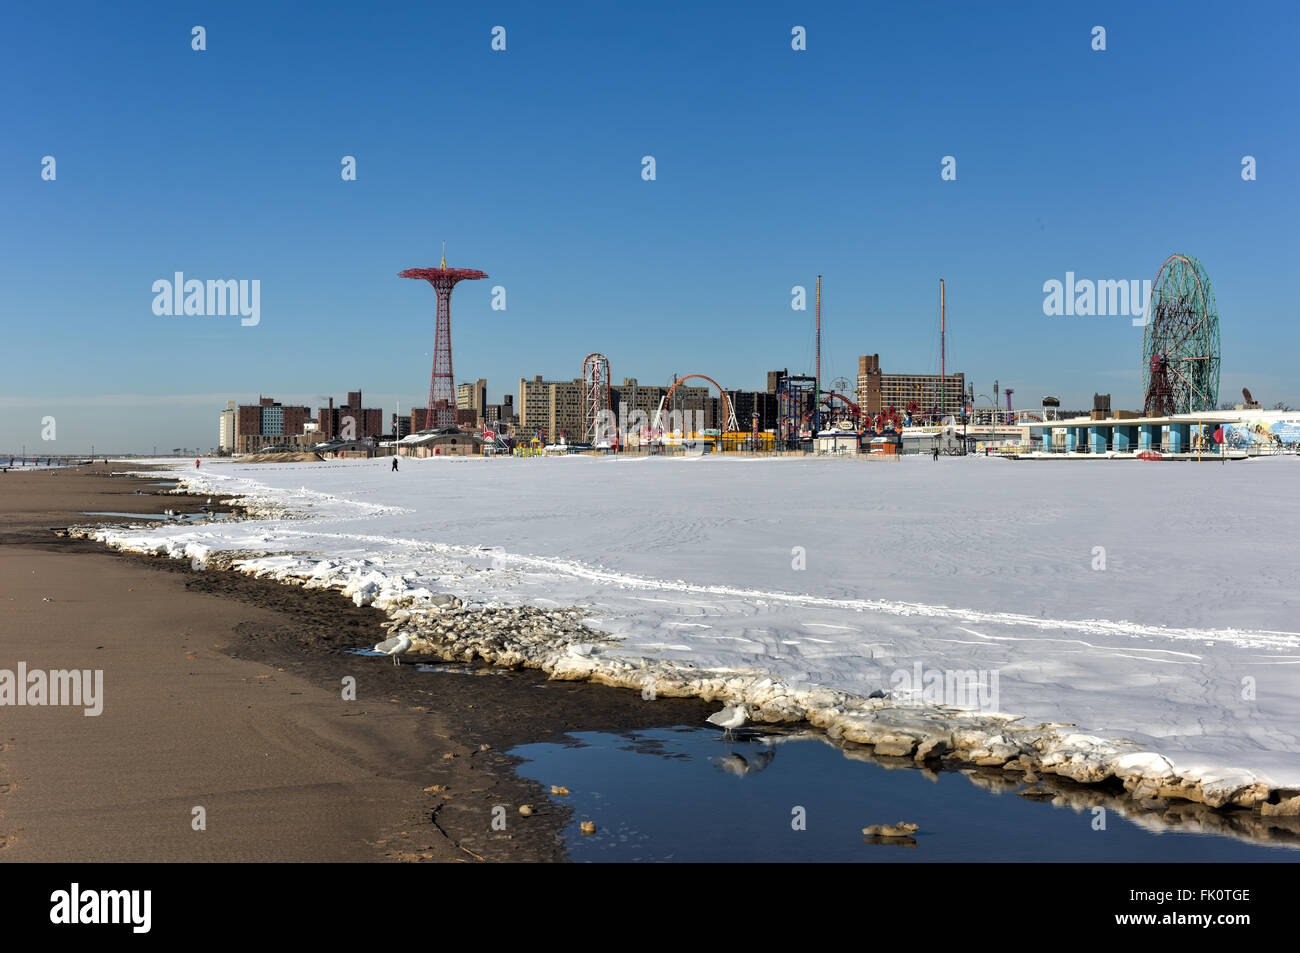 La plage de Coney Island à Brooklyn, New York après une importante tempête de neige. Banque D'Images